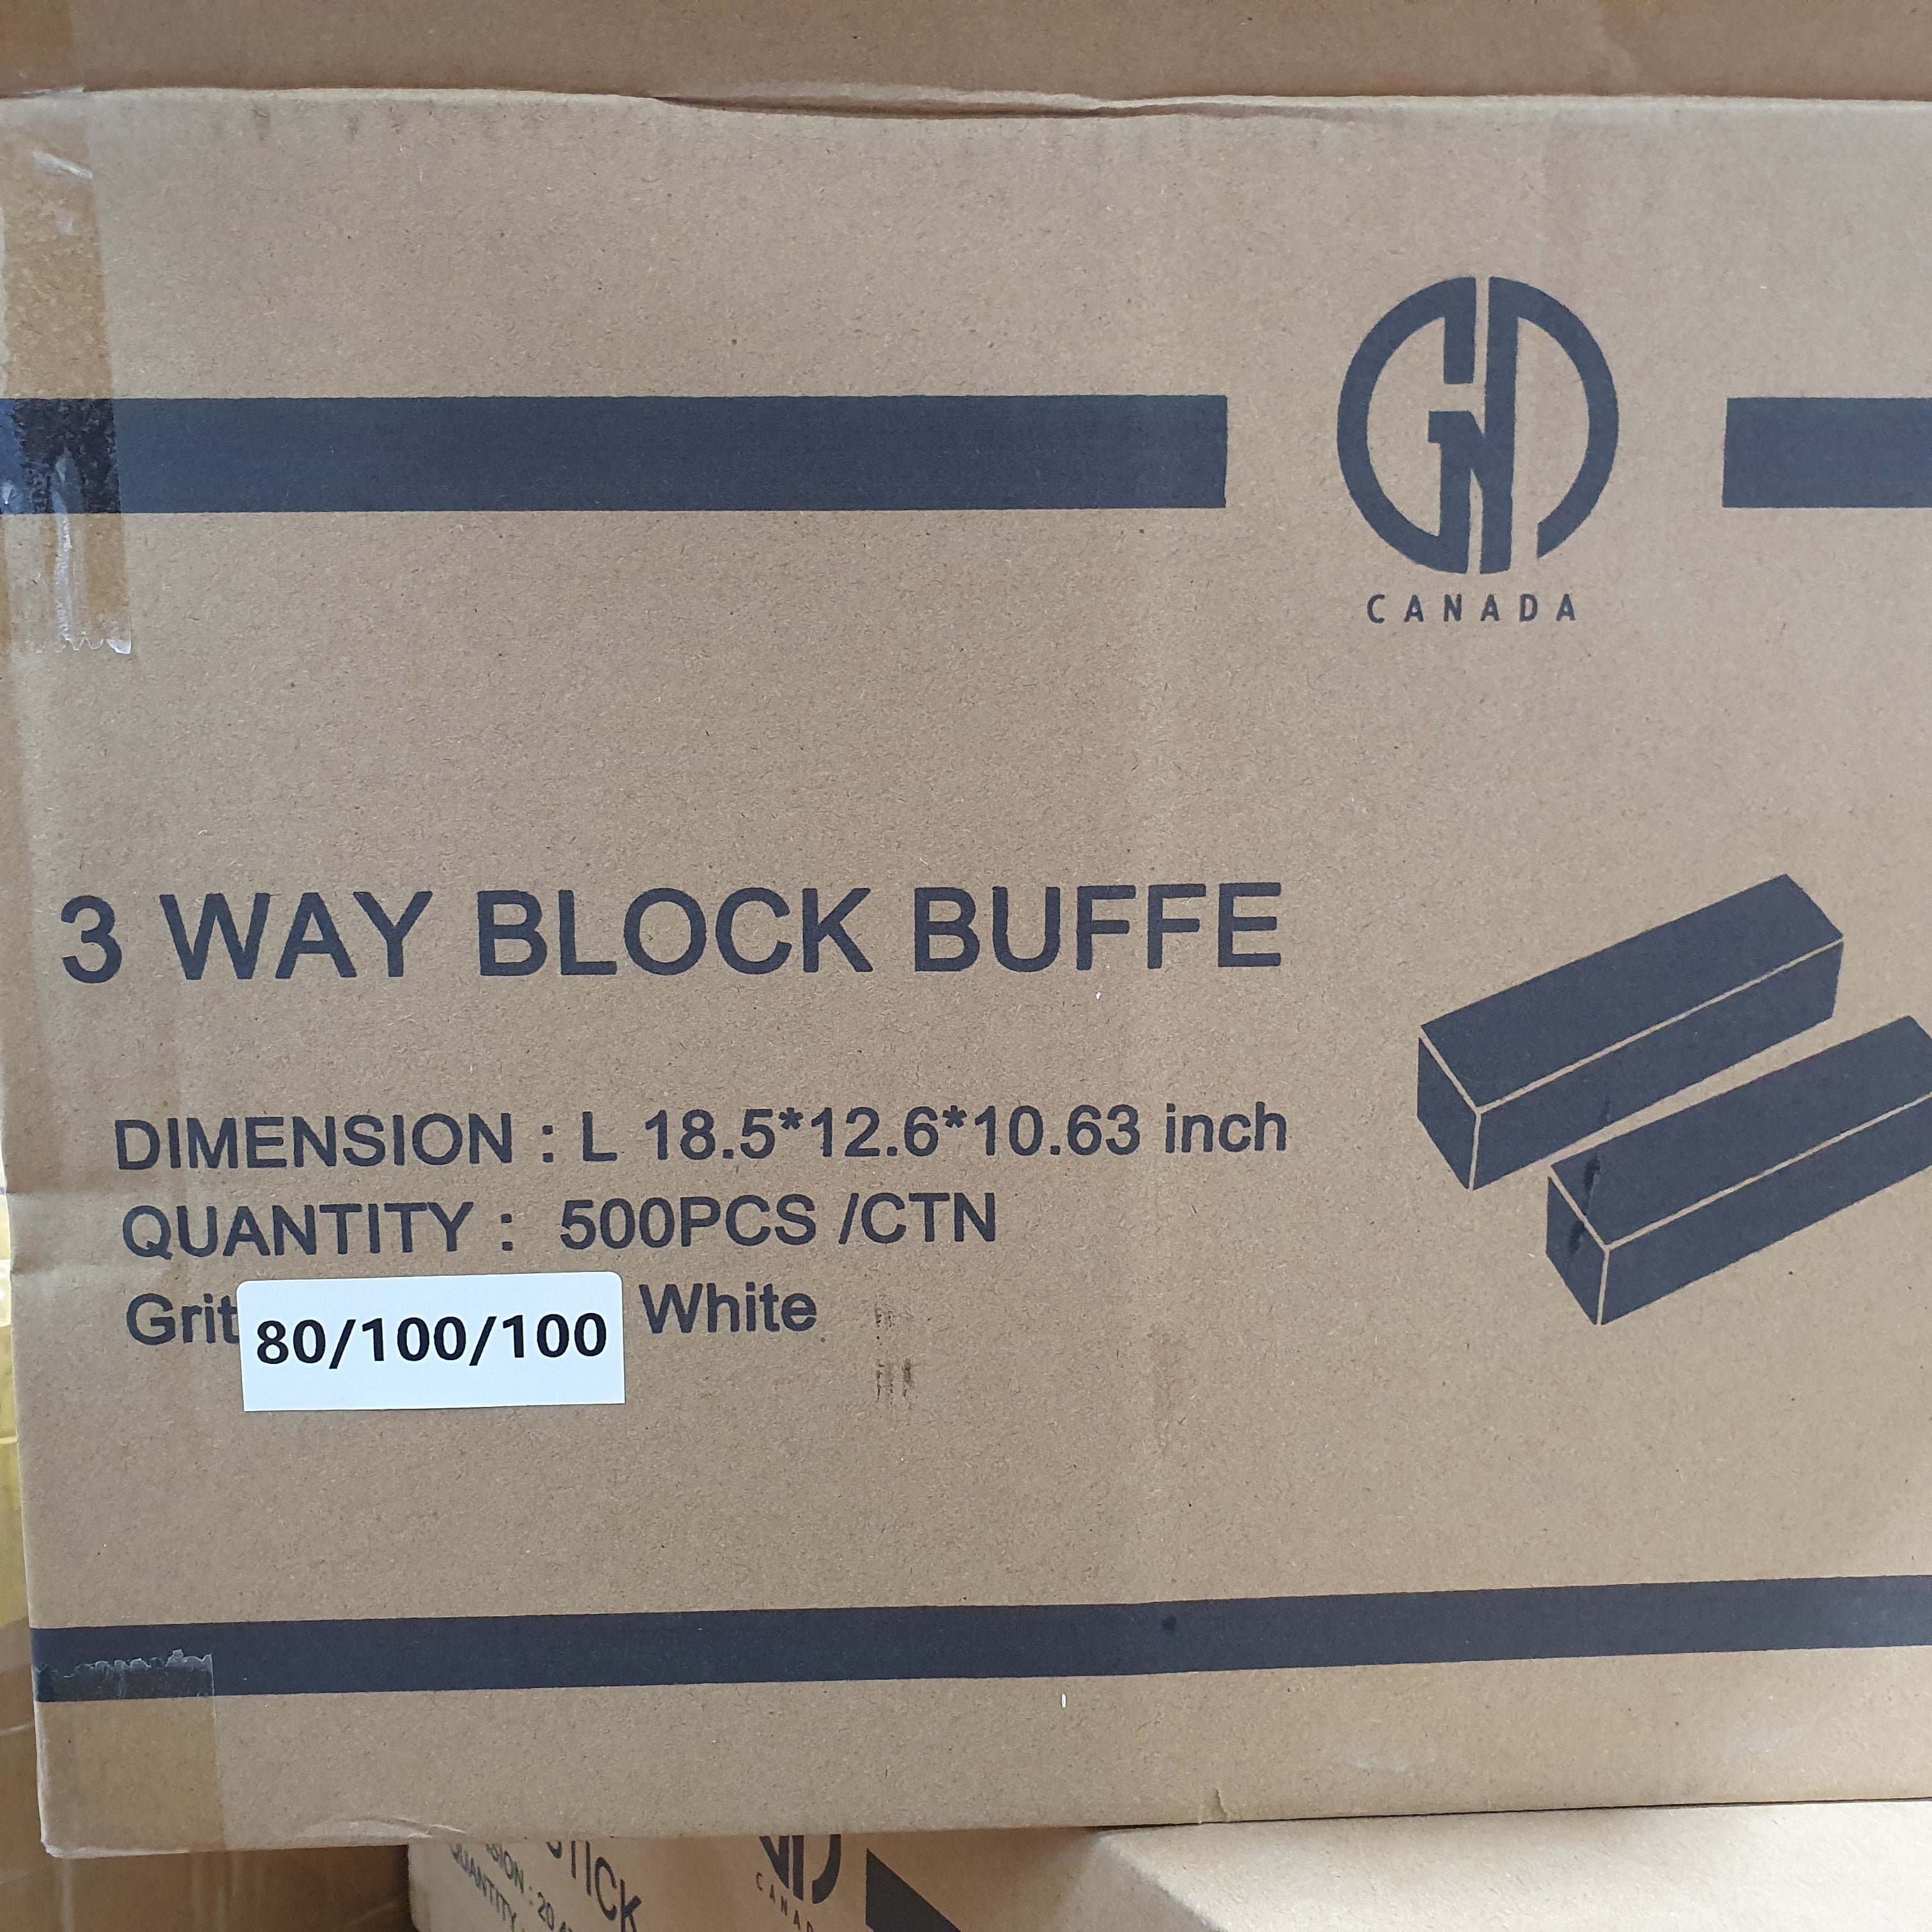 GND 3 WAY BLOCK BUFFER - 80/100/100 - WHITE - 500 PCS